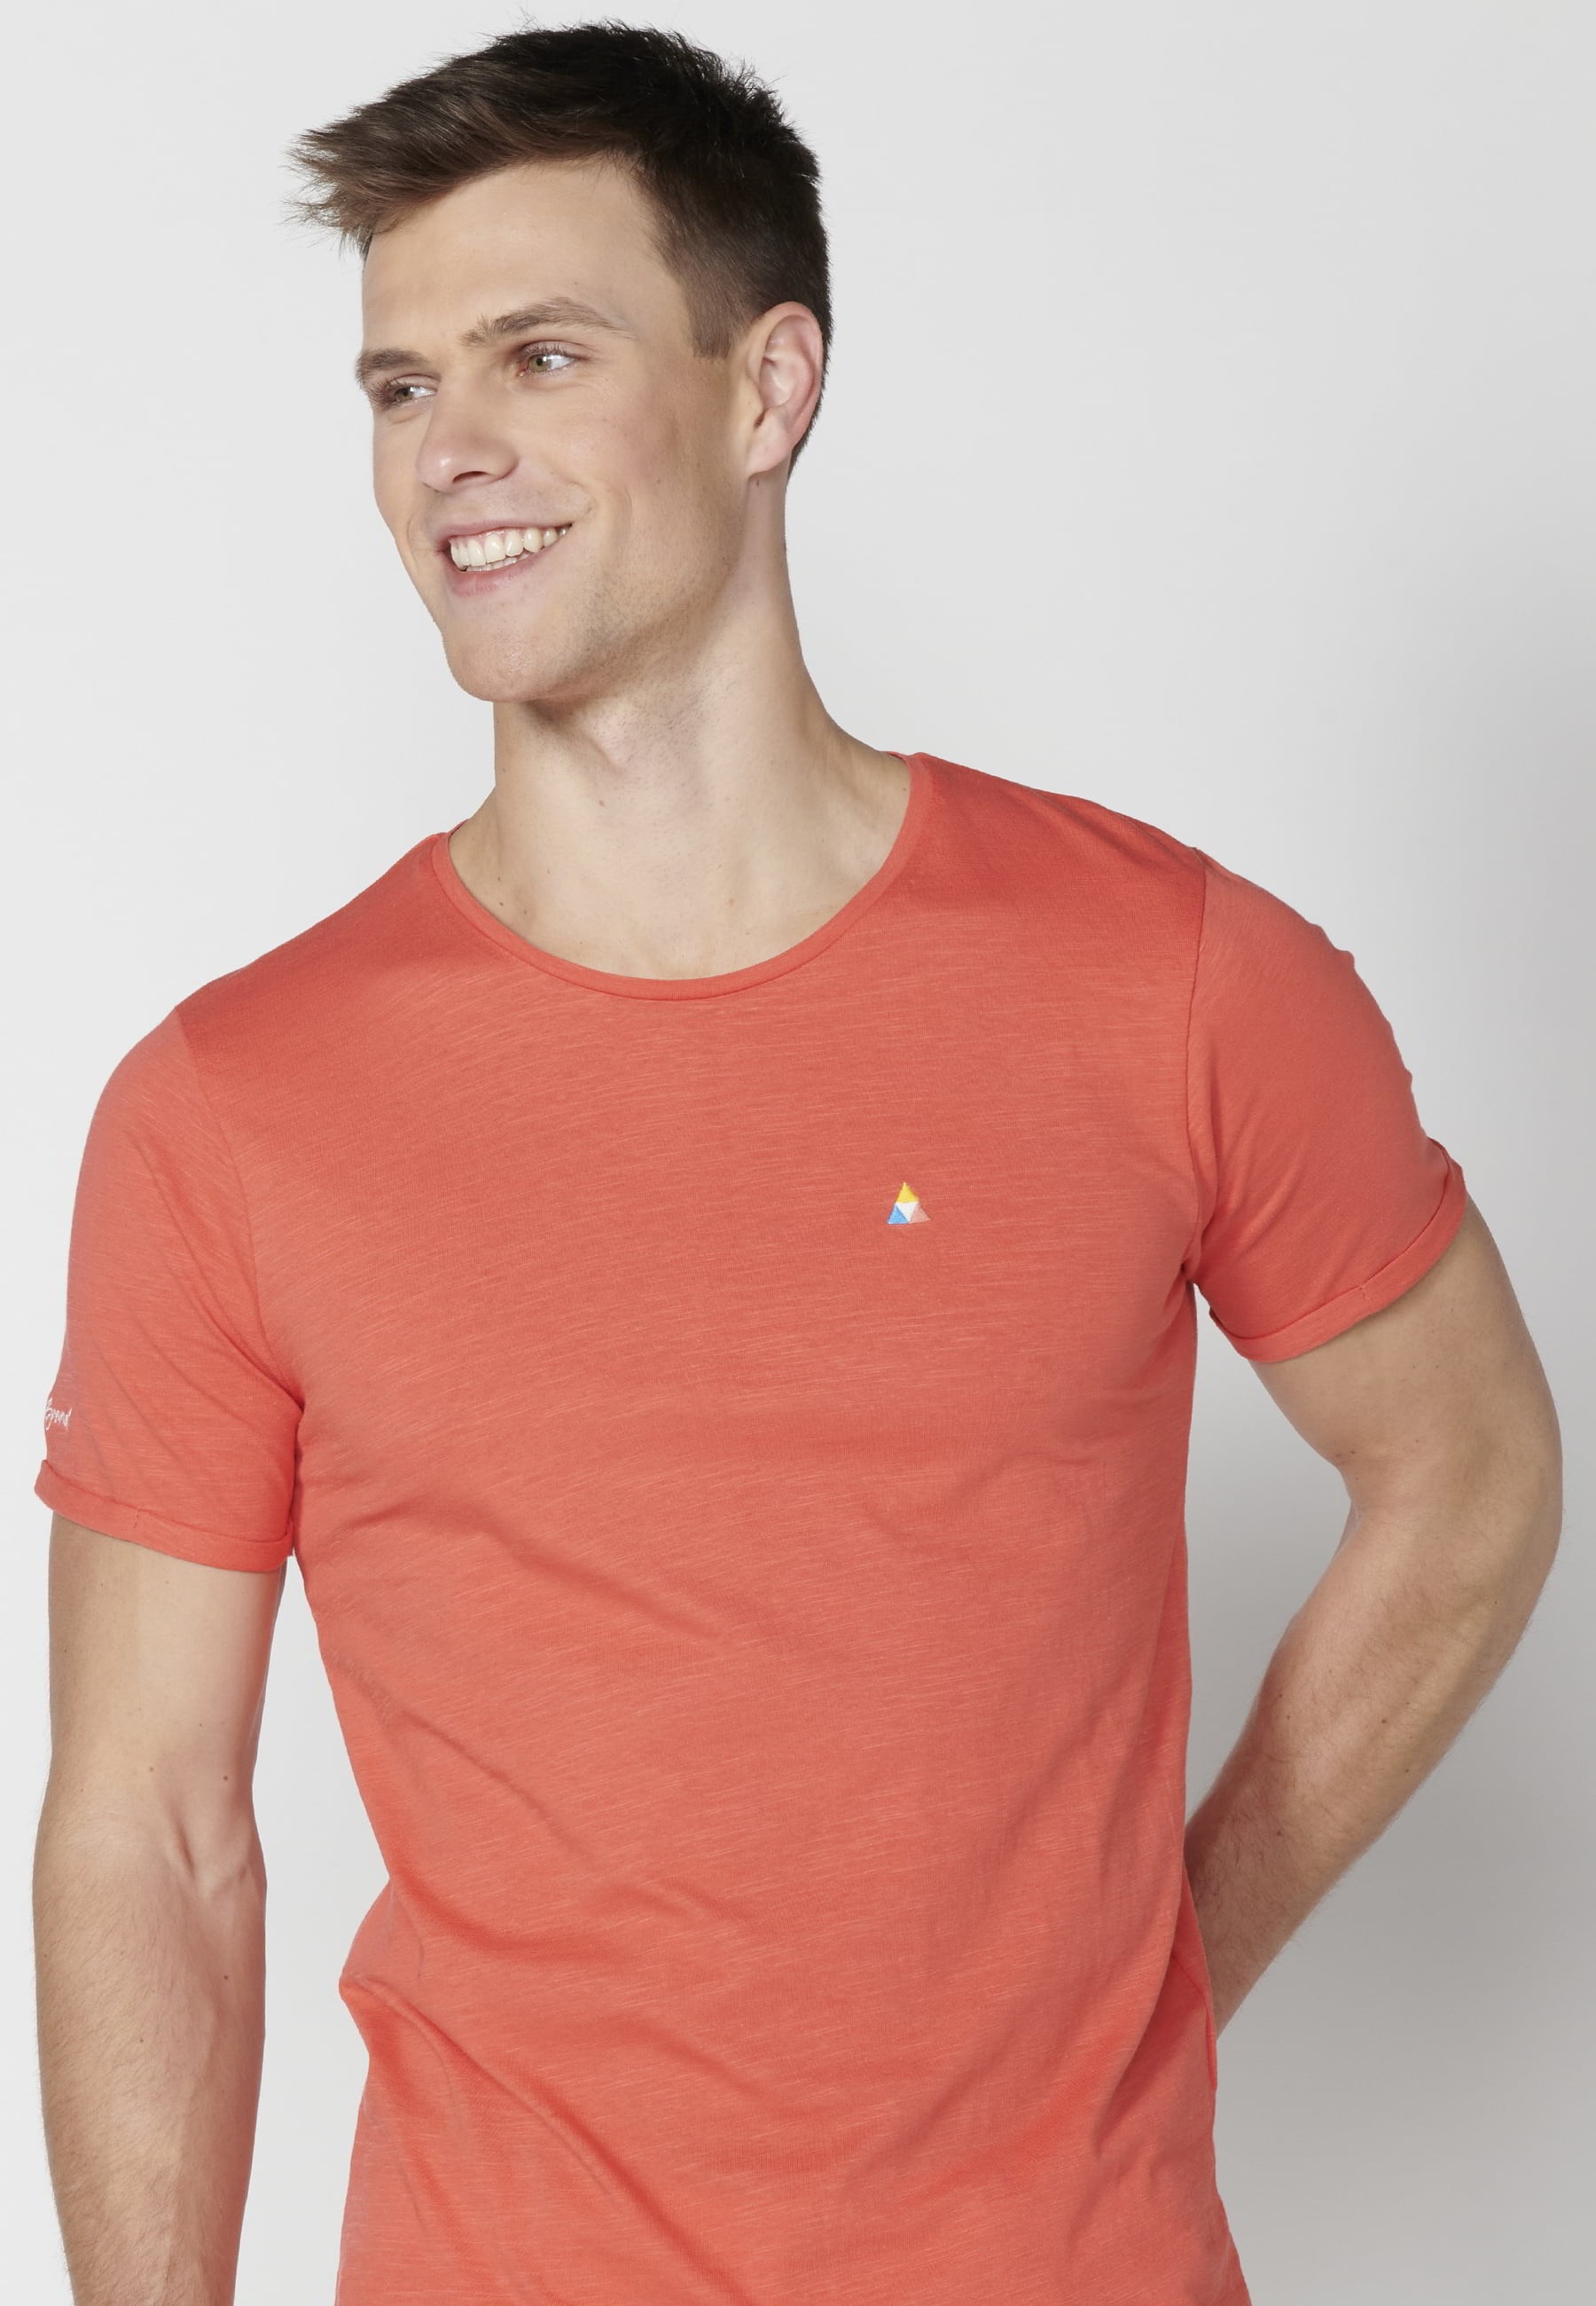 Men's Pink Cotton Short Sleeve T-shirt